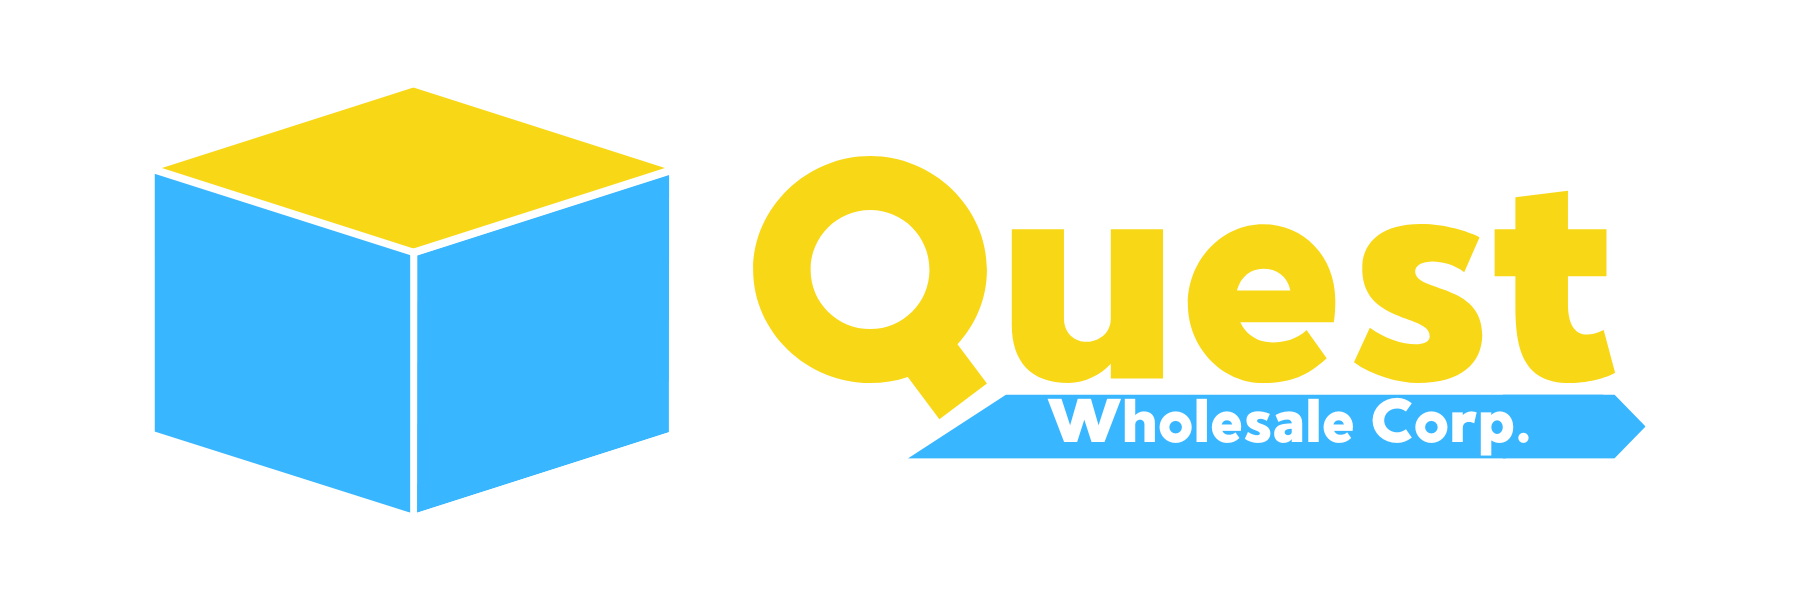 Quest Wholesale Corp